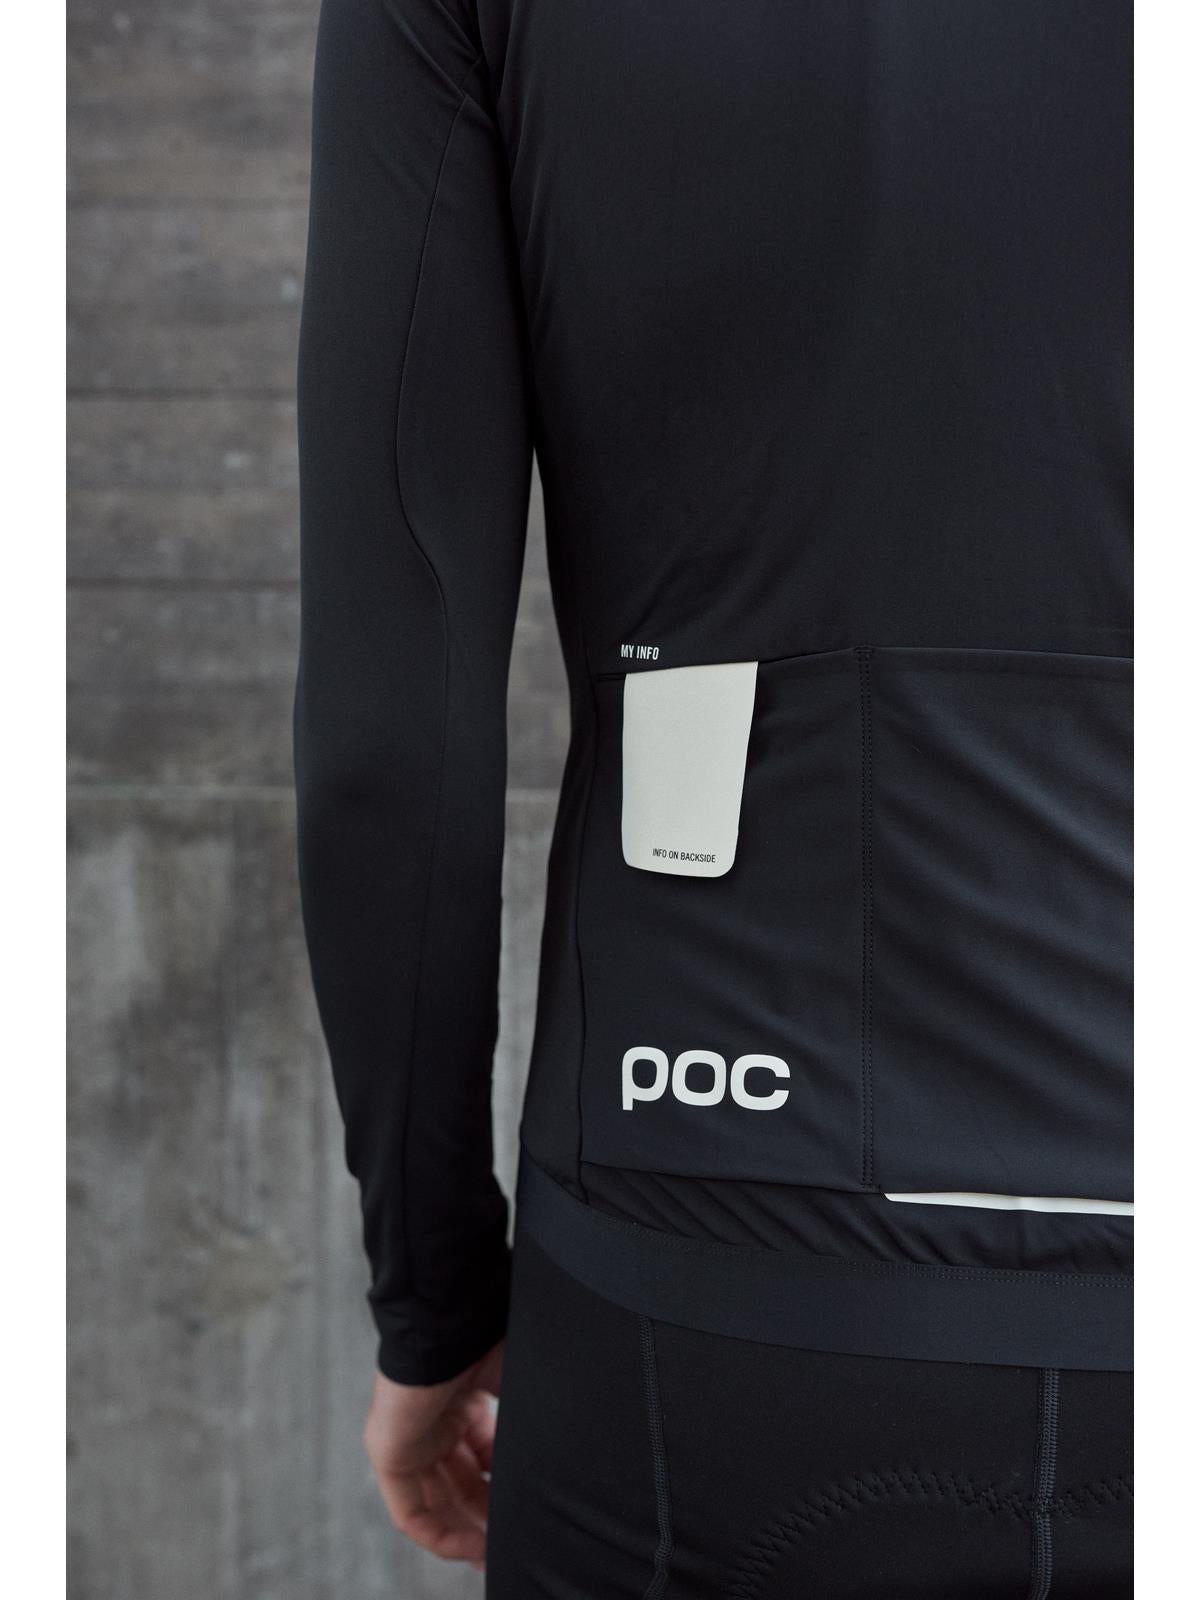 Koszulka rowerowa POC M'S Ambient Thermal Jersey czarny